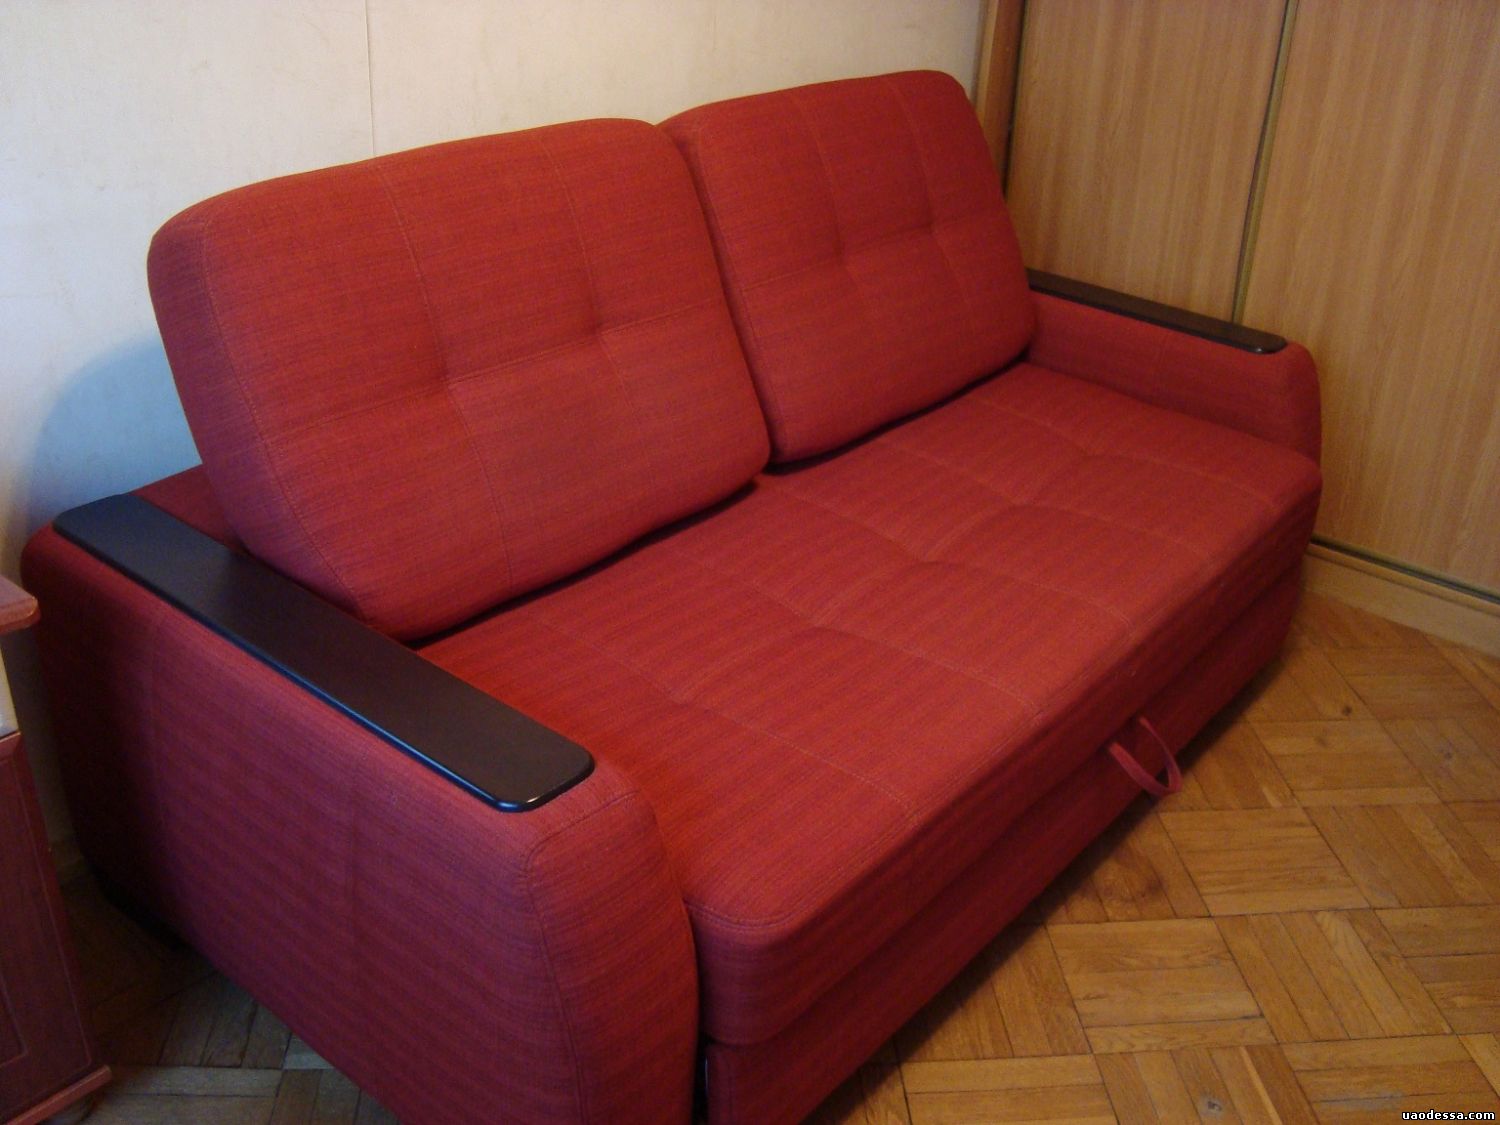 Купить б у мебель диваны. Дешевые диваны. Диван б/у. Бэушный диван. Самый дешевый диван.